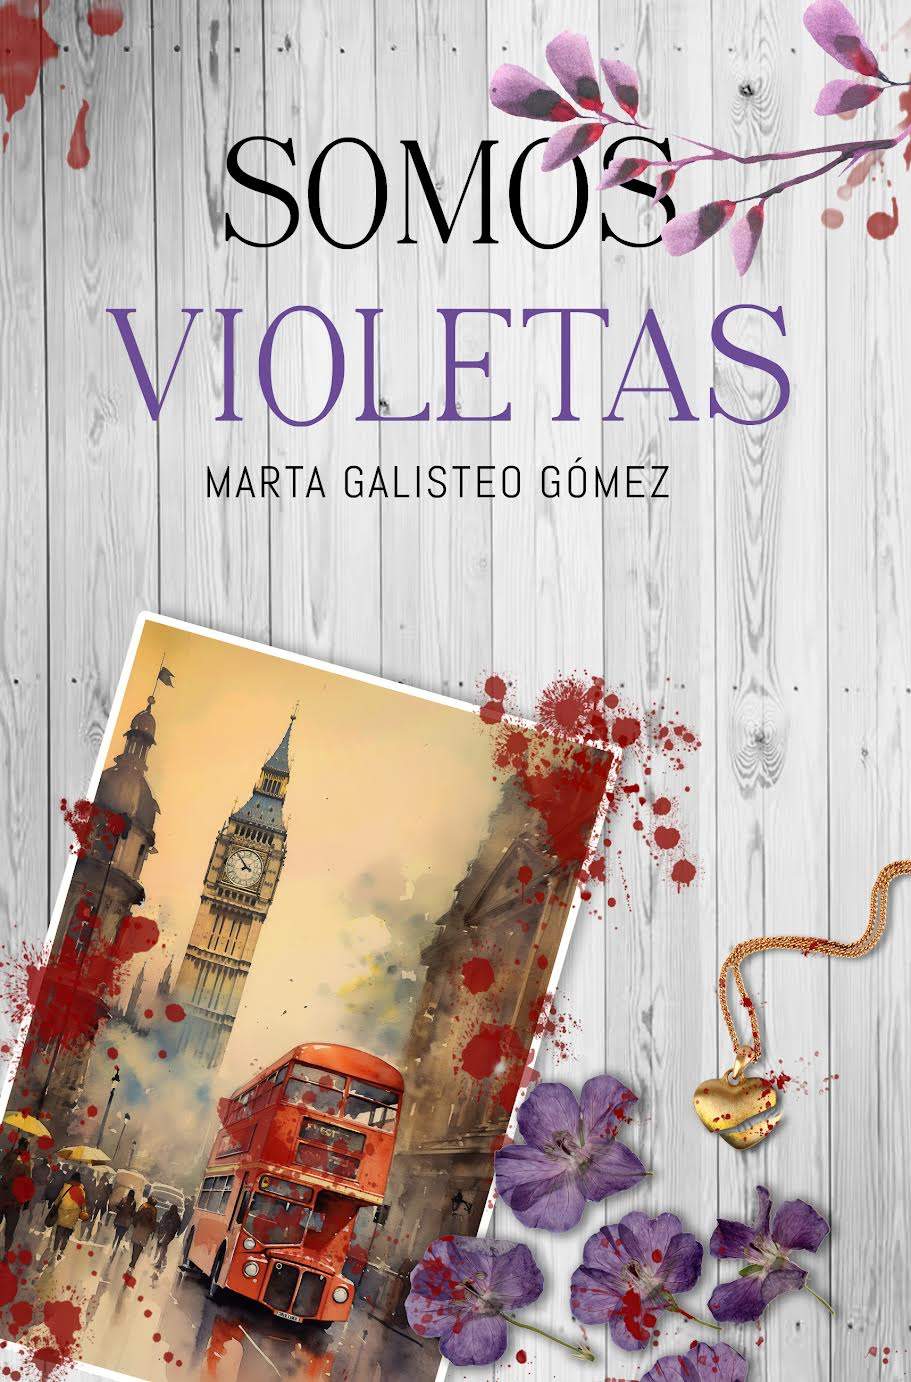 Libros y Literatura anuncia el debut de Marta  Galisteo Gómez con "Somos violetas"